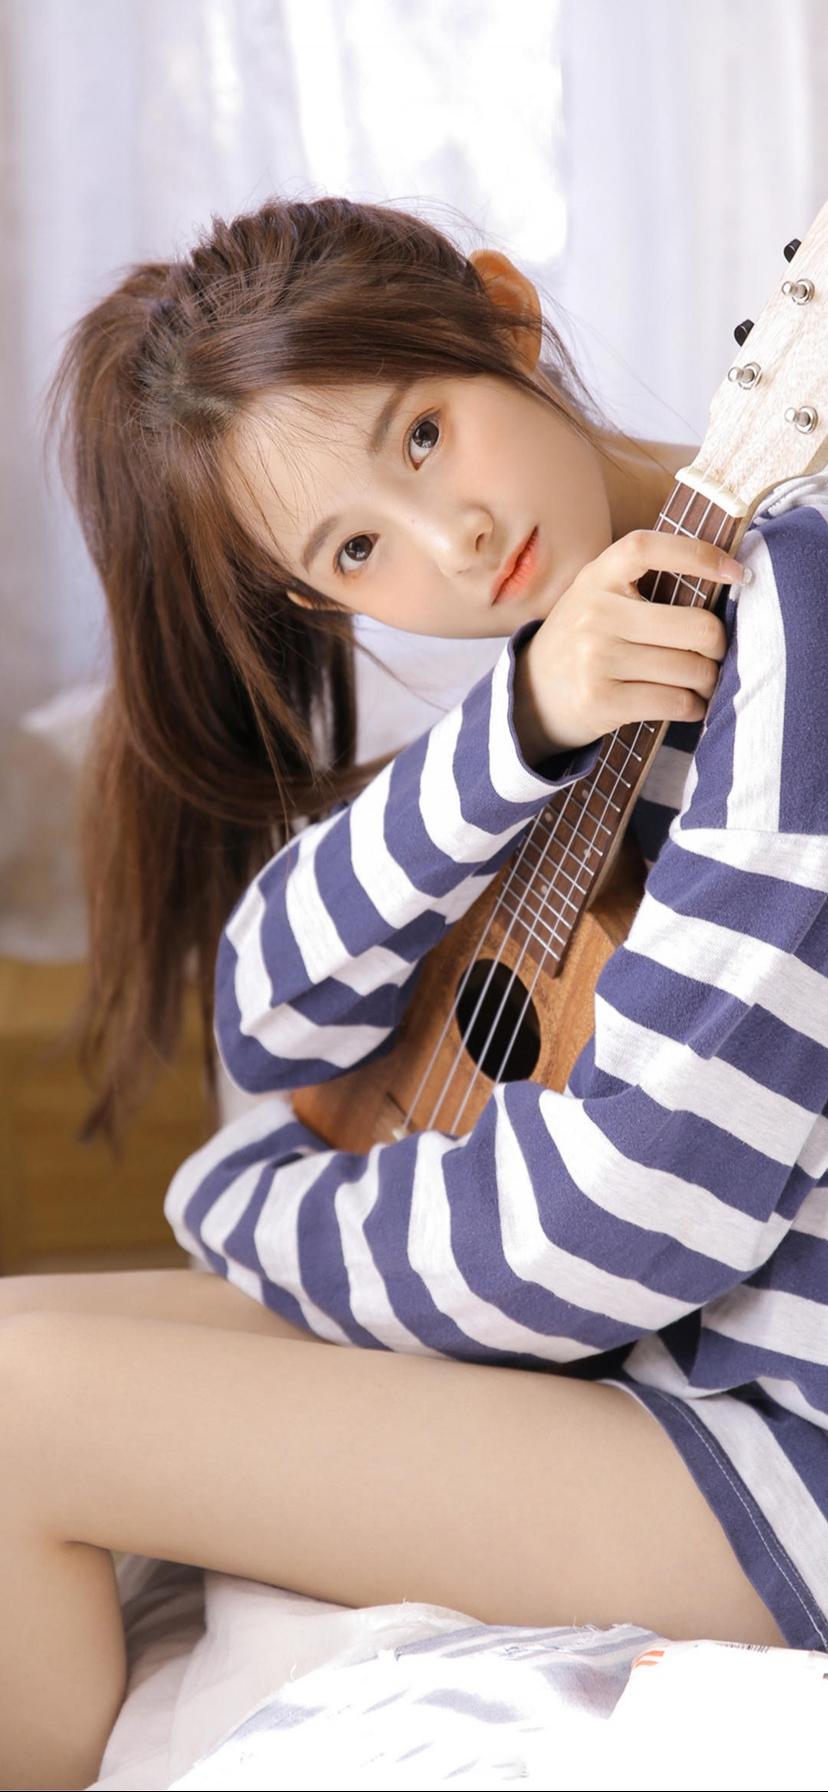 弹吉他的可爱美少女写真手机壁纸